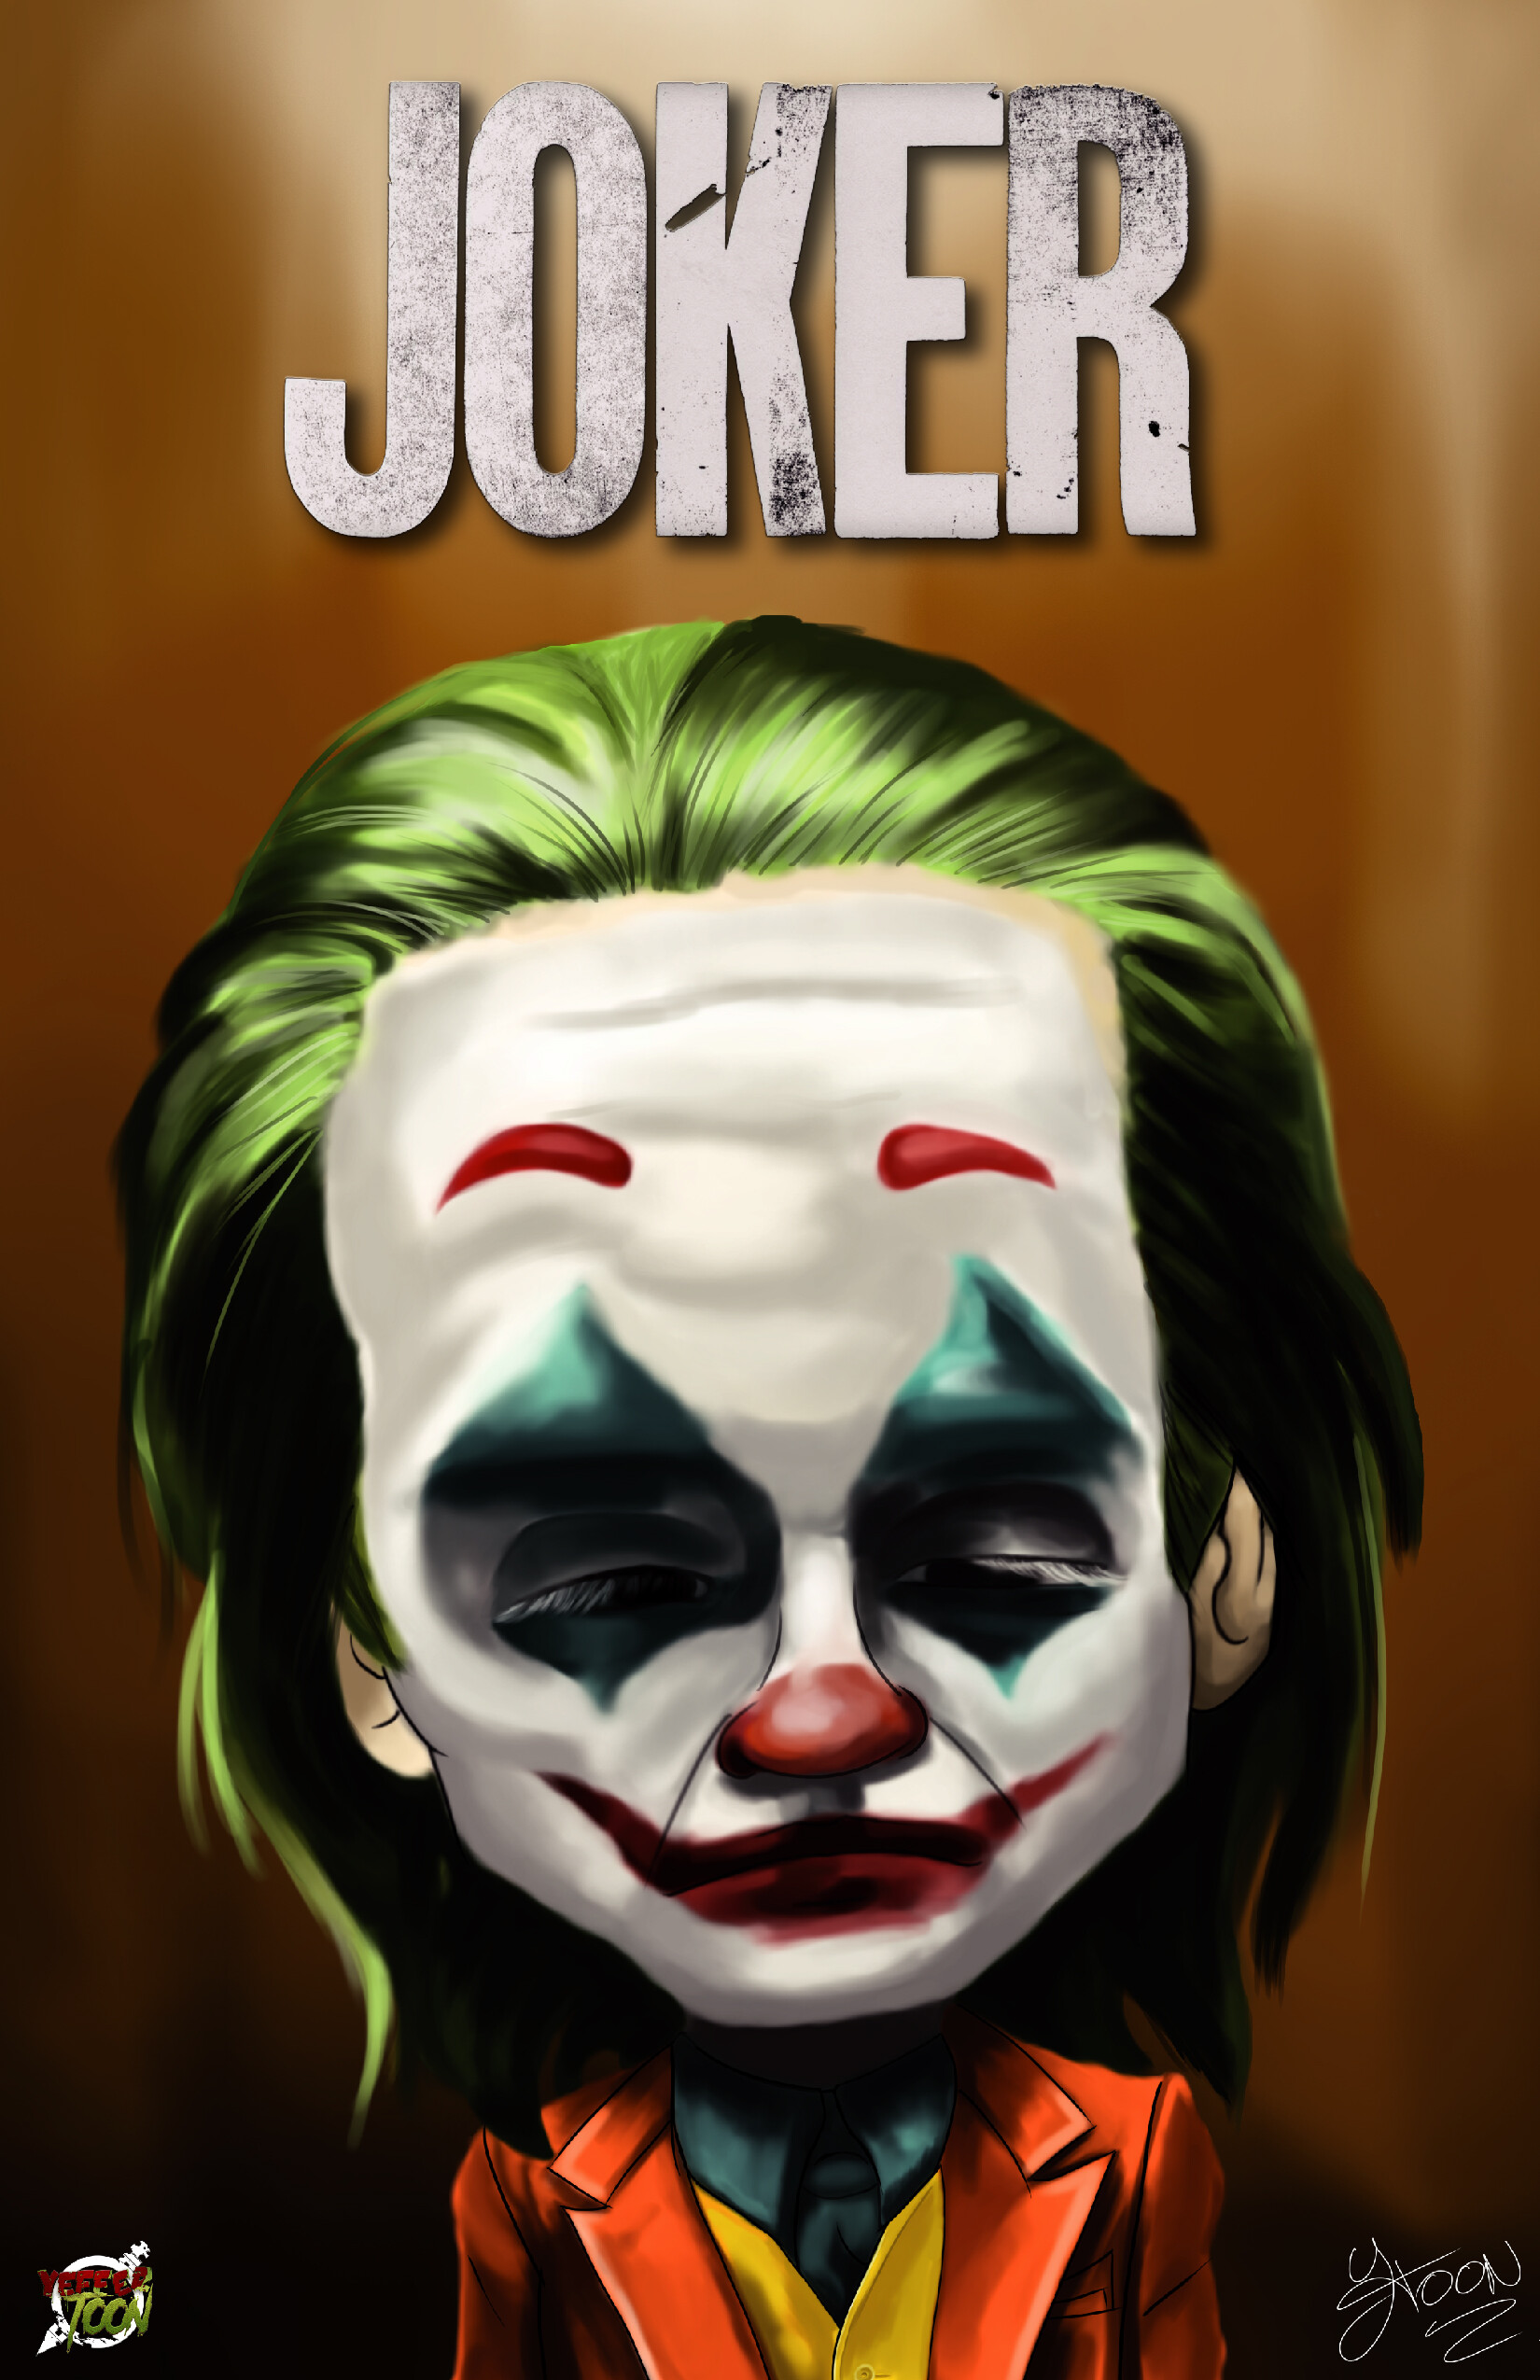 ArtStation - Caricatura del Joker